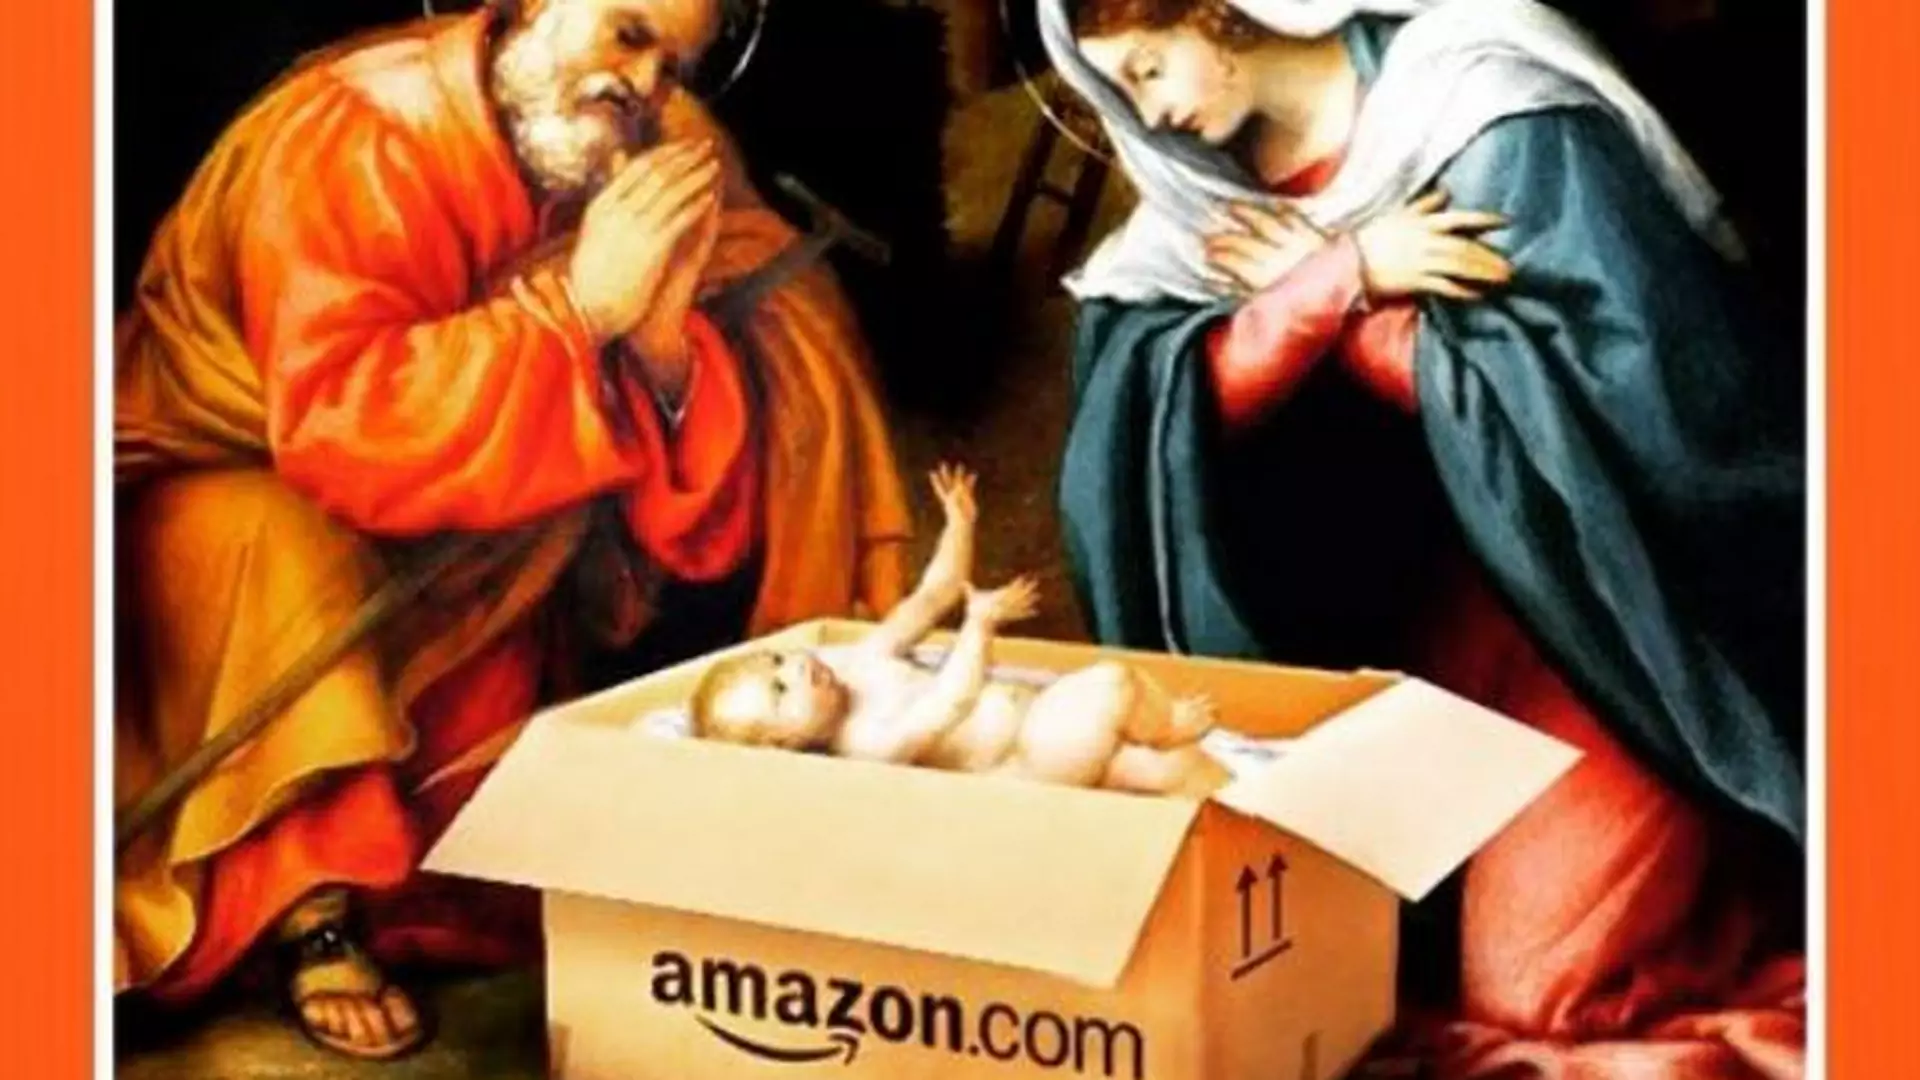 Przesyłka z Jezuskiem od Amazona. Popularny dziennik pokazuje święta w krzywym zwierciadle